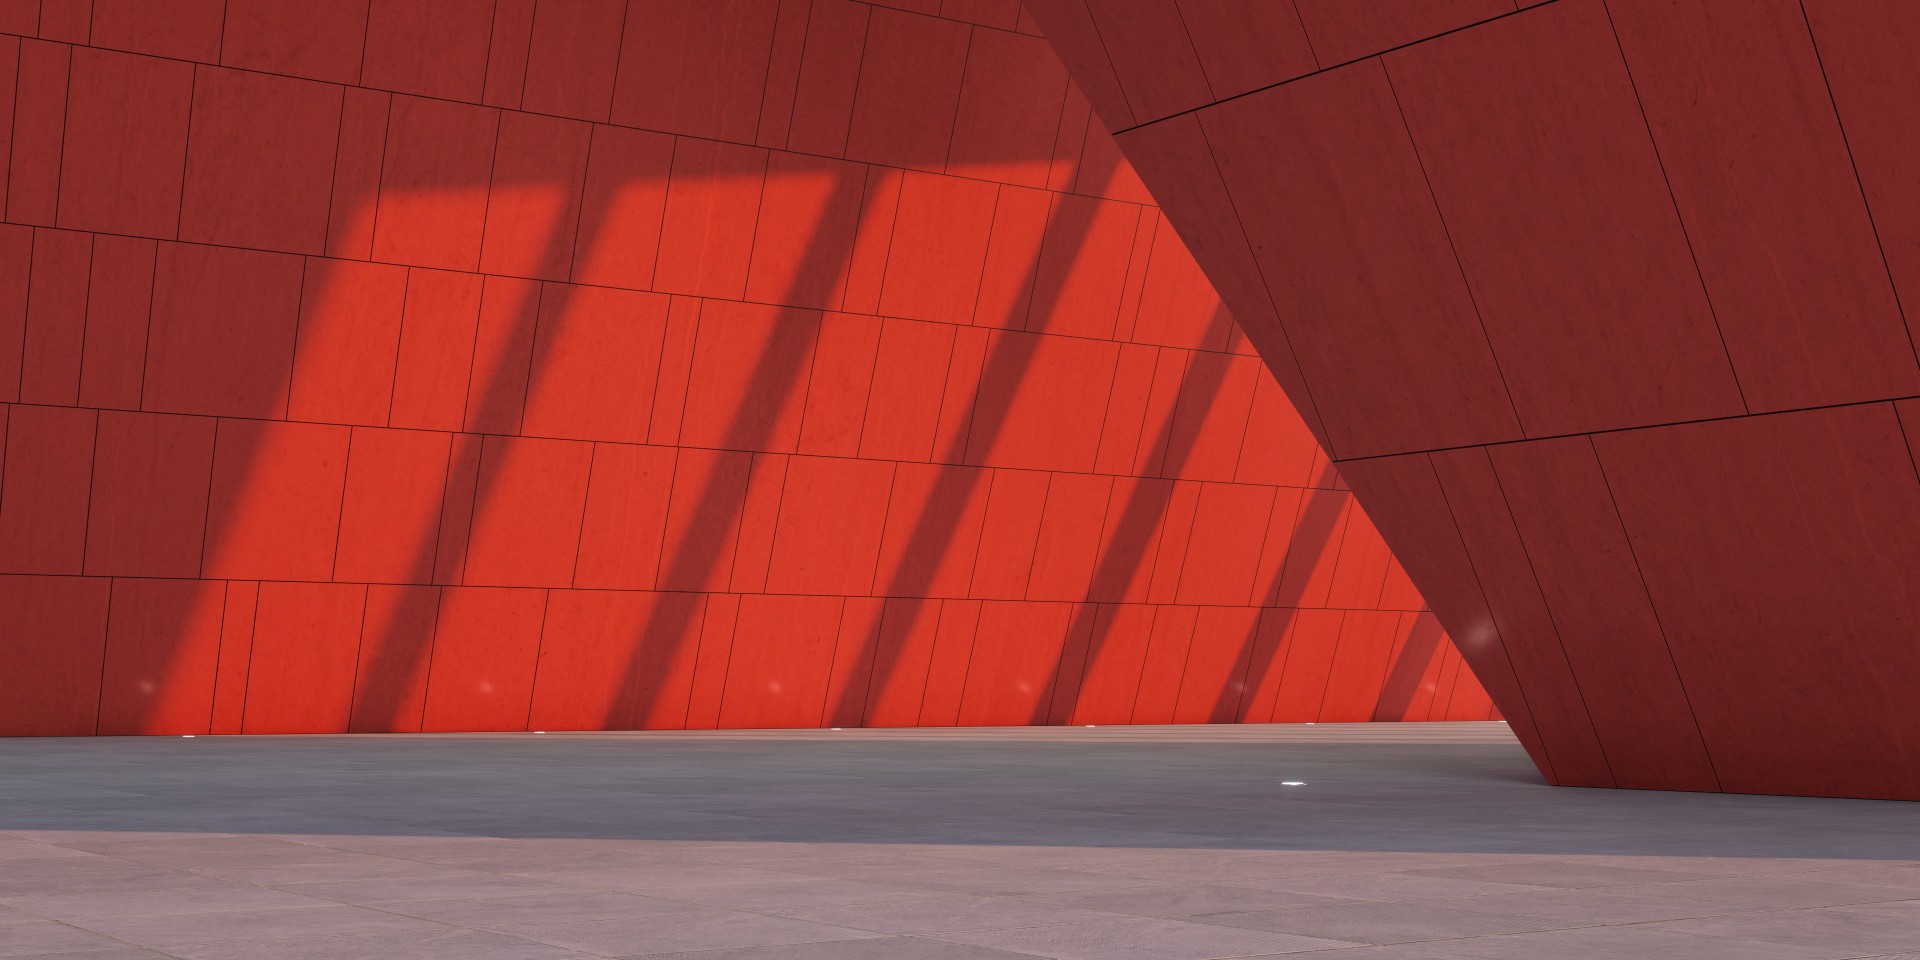 Punainen seinä, jossa näkyy valon ja varjon eroja.